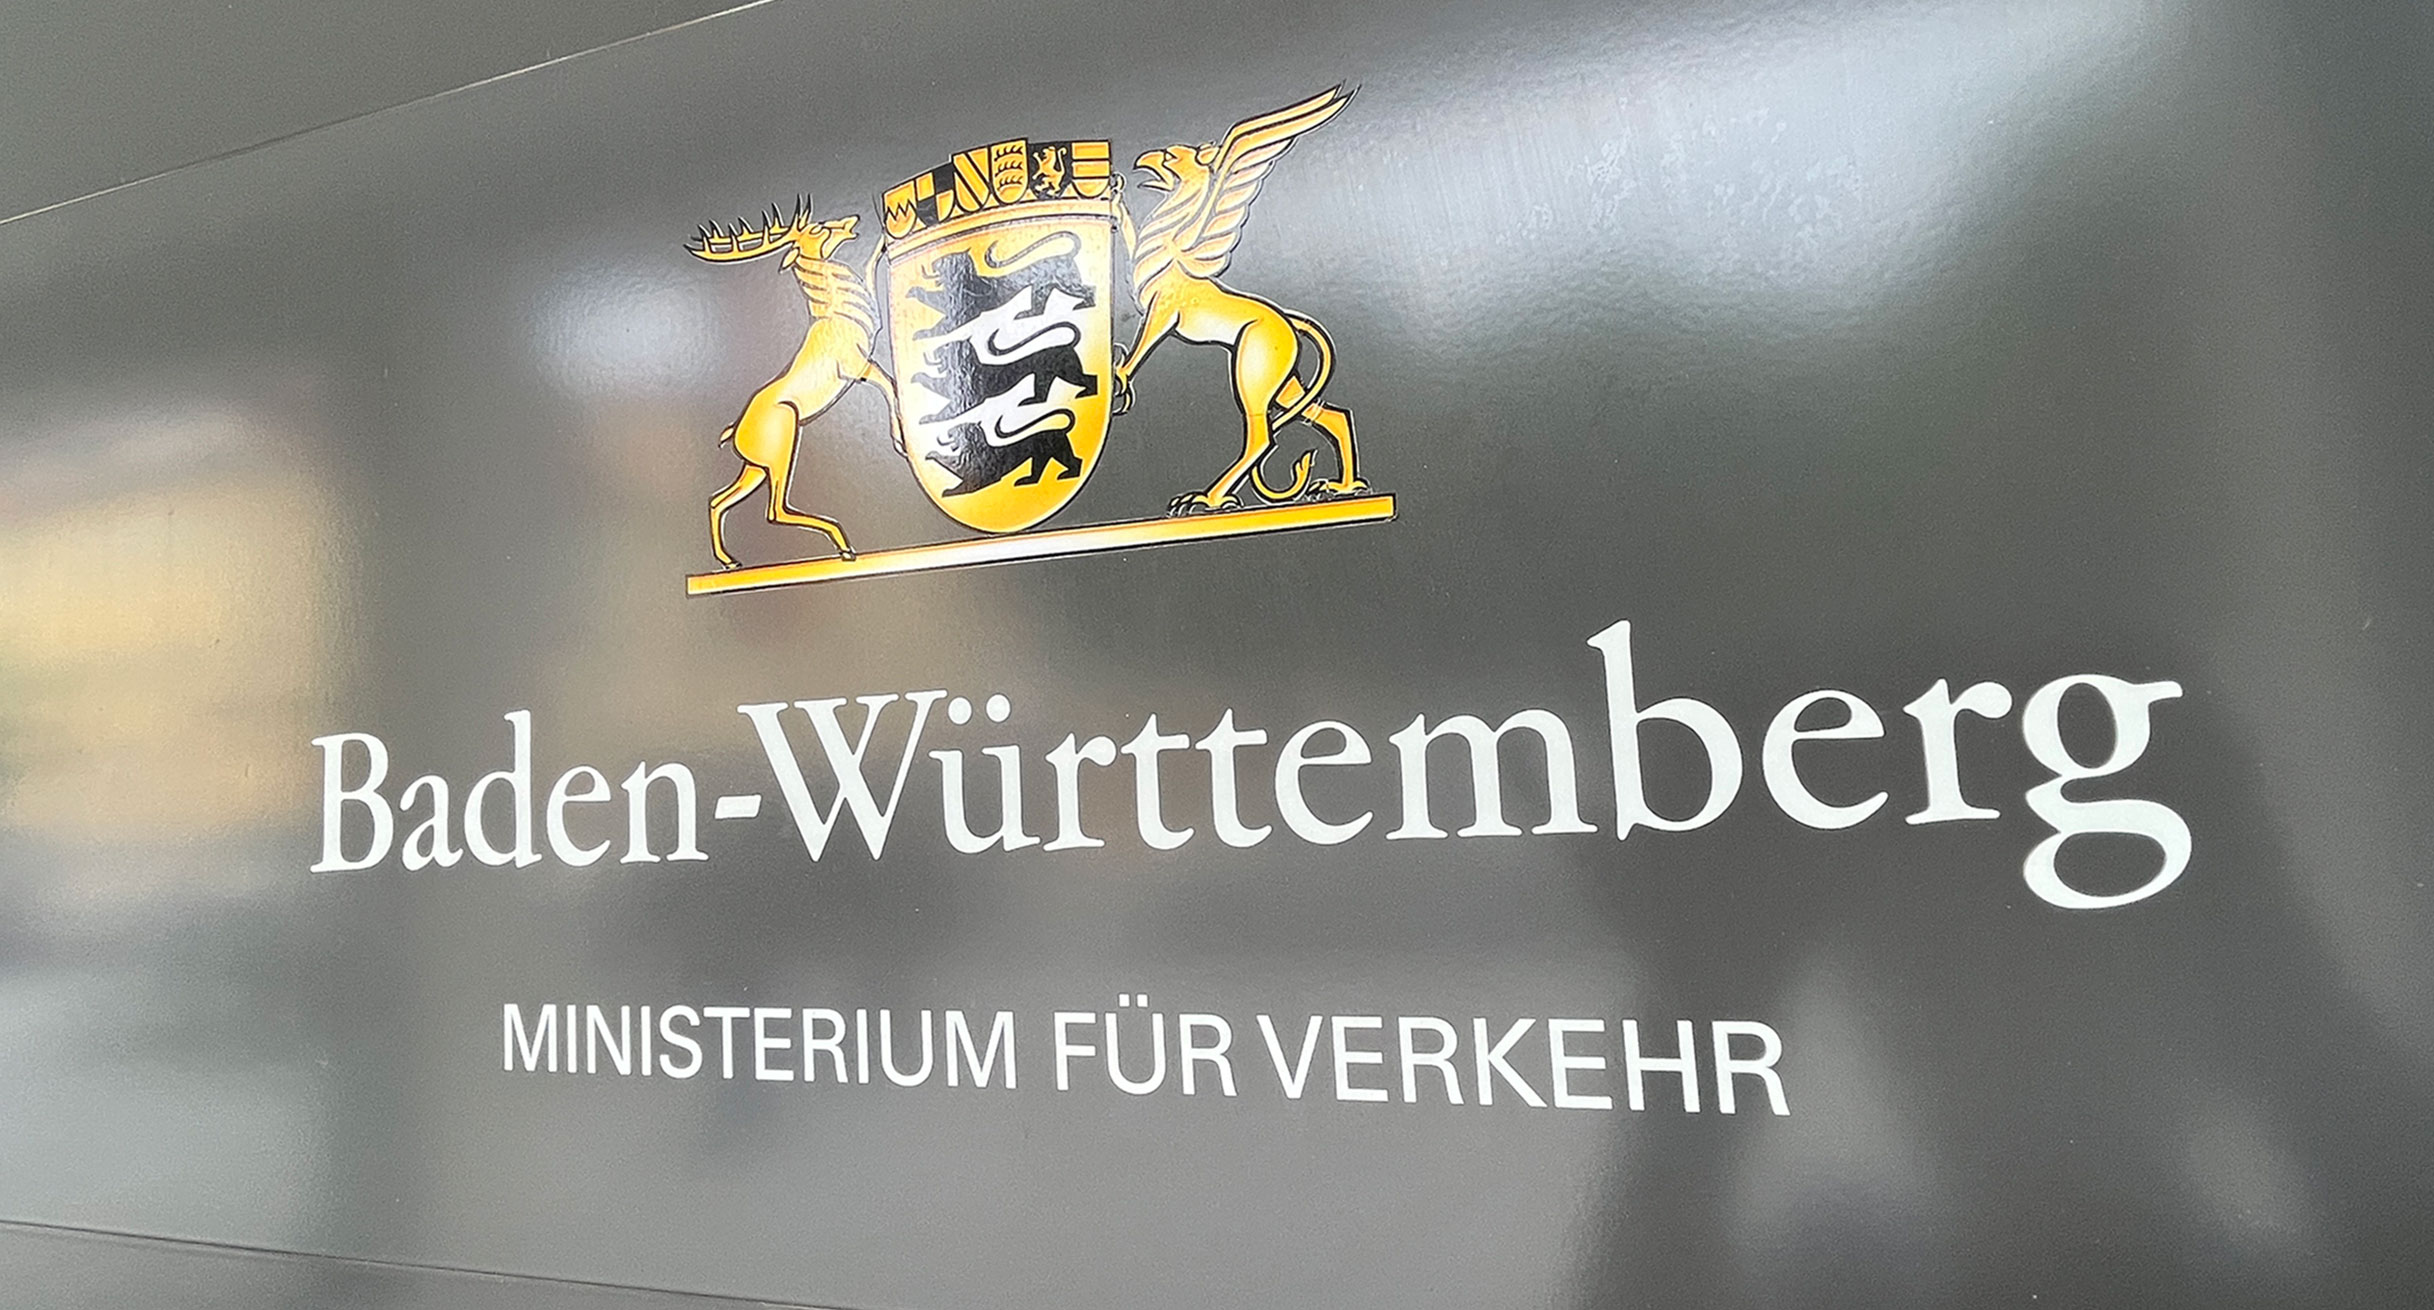 Umweltzonen in Baden-Württemberg: Ministerium für Verkehr Baden-Württemberg